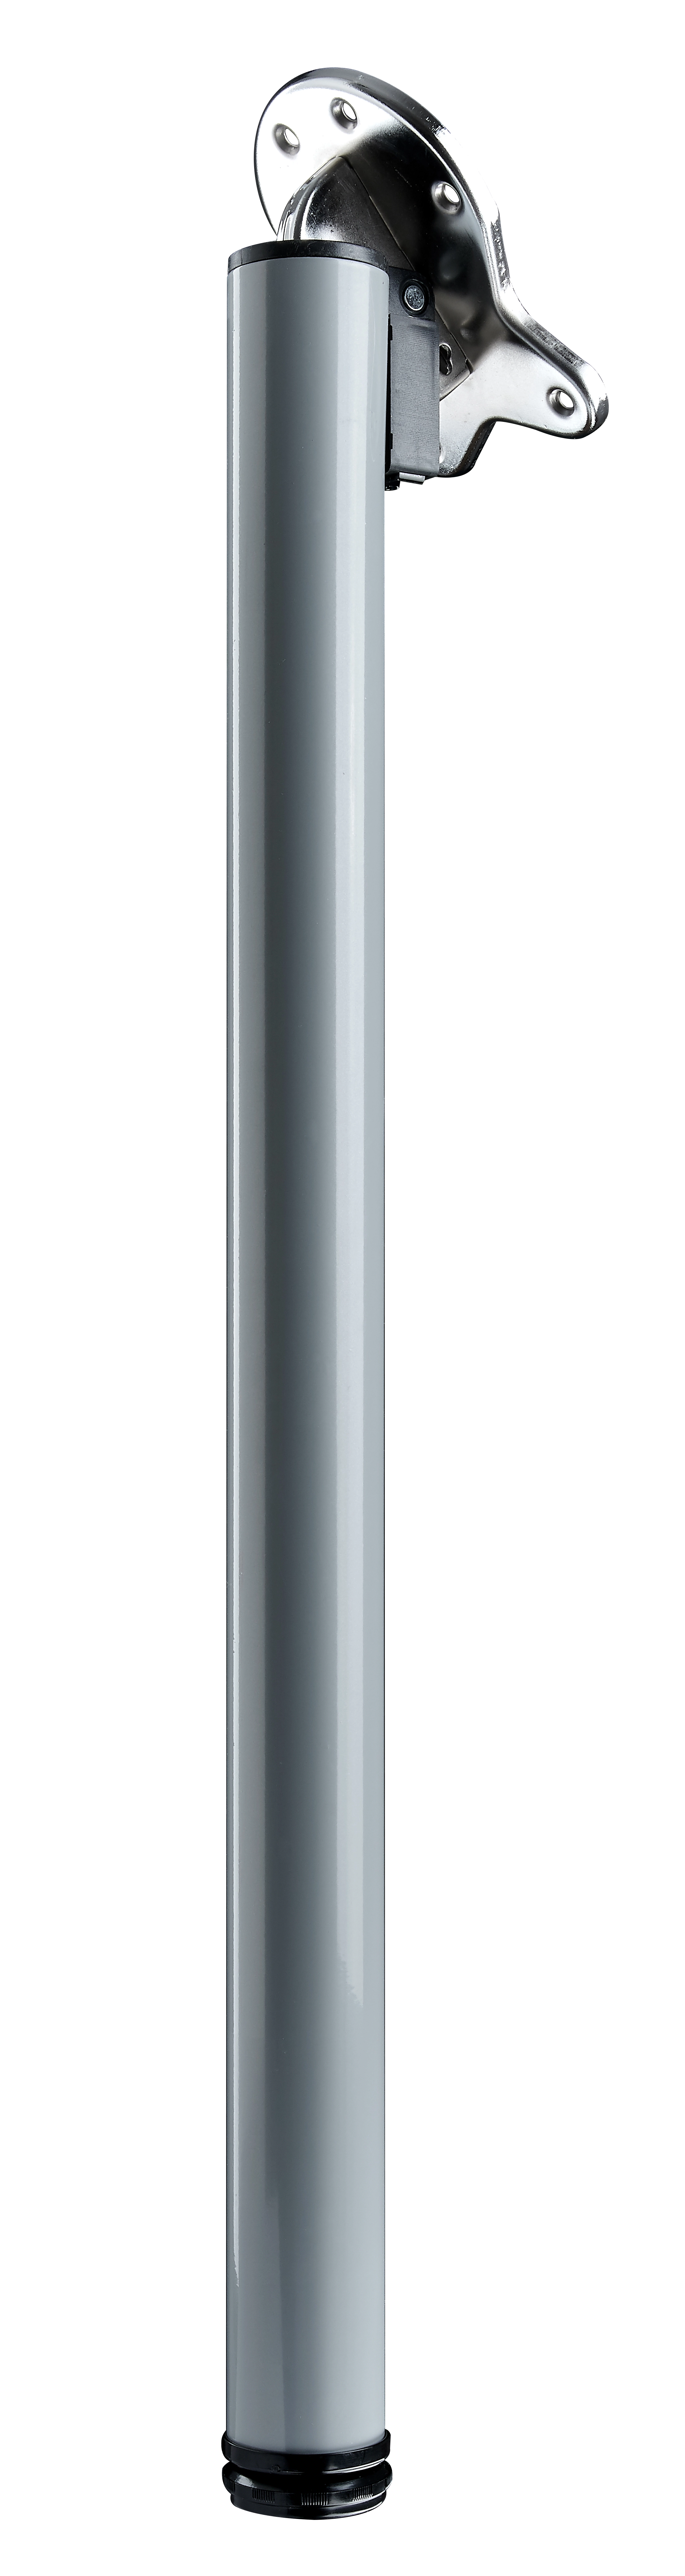 Tarrox Tischbein 90° klappbar 71 cm Ø50 mm, silber